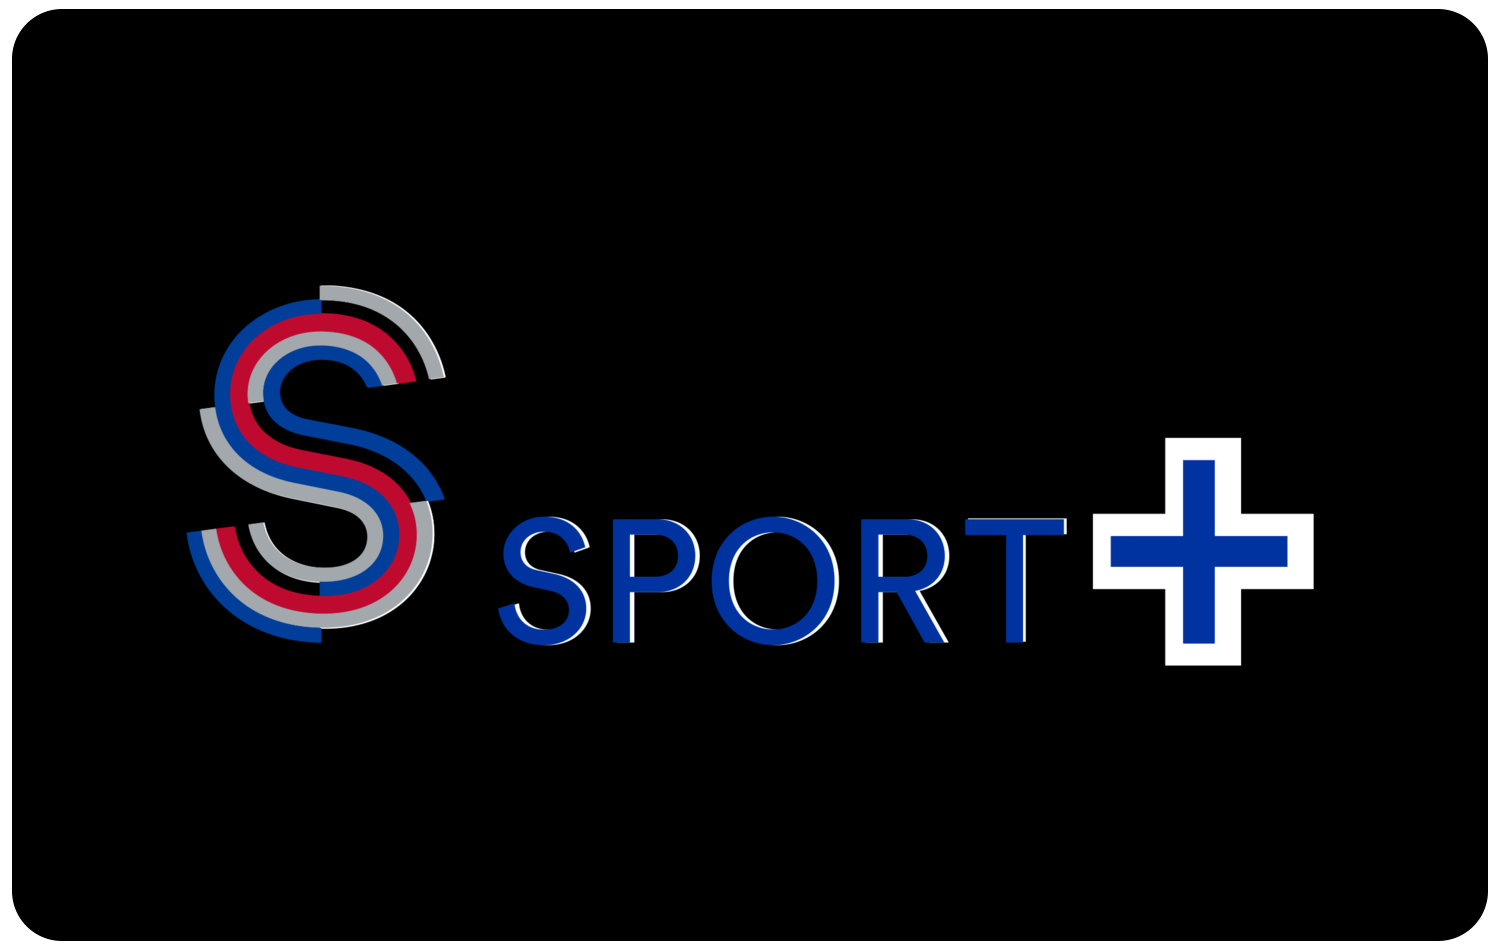 S Sport Plus. Sport Plus izle. Плюс логотип. S Sports Plus Canli. Sports plus canli izle